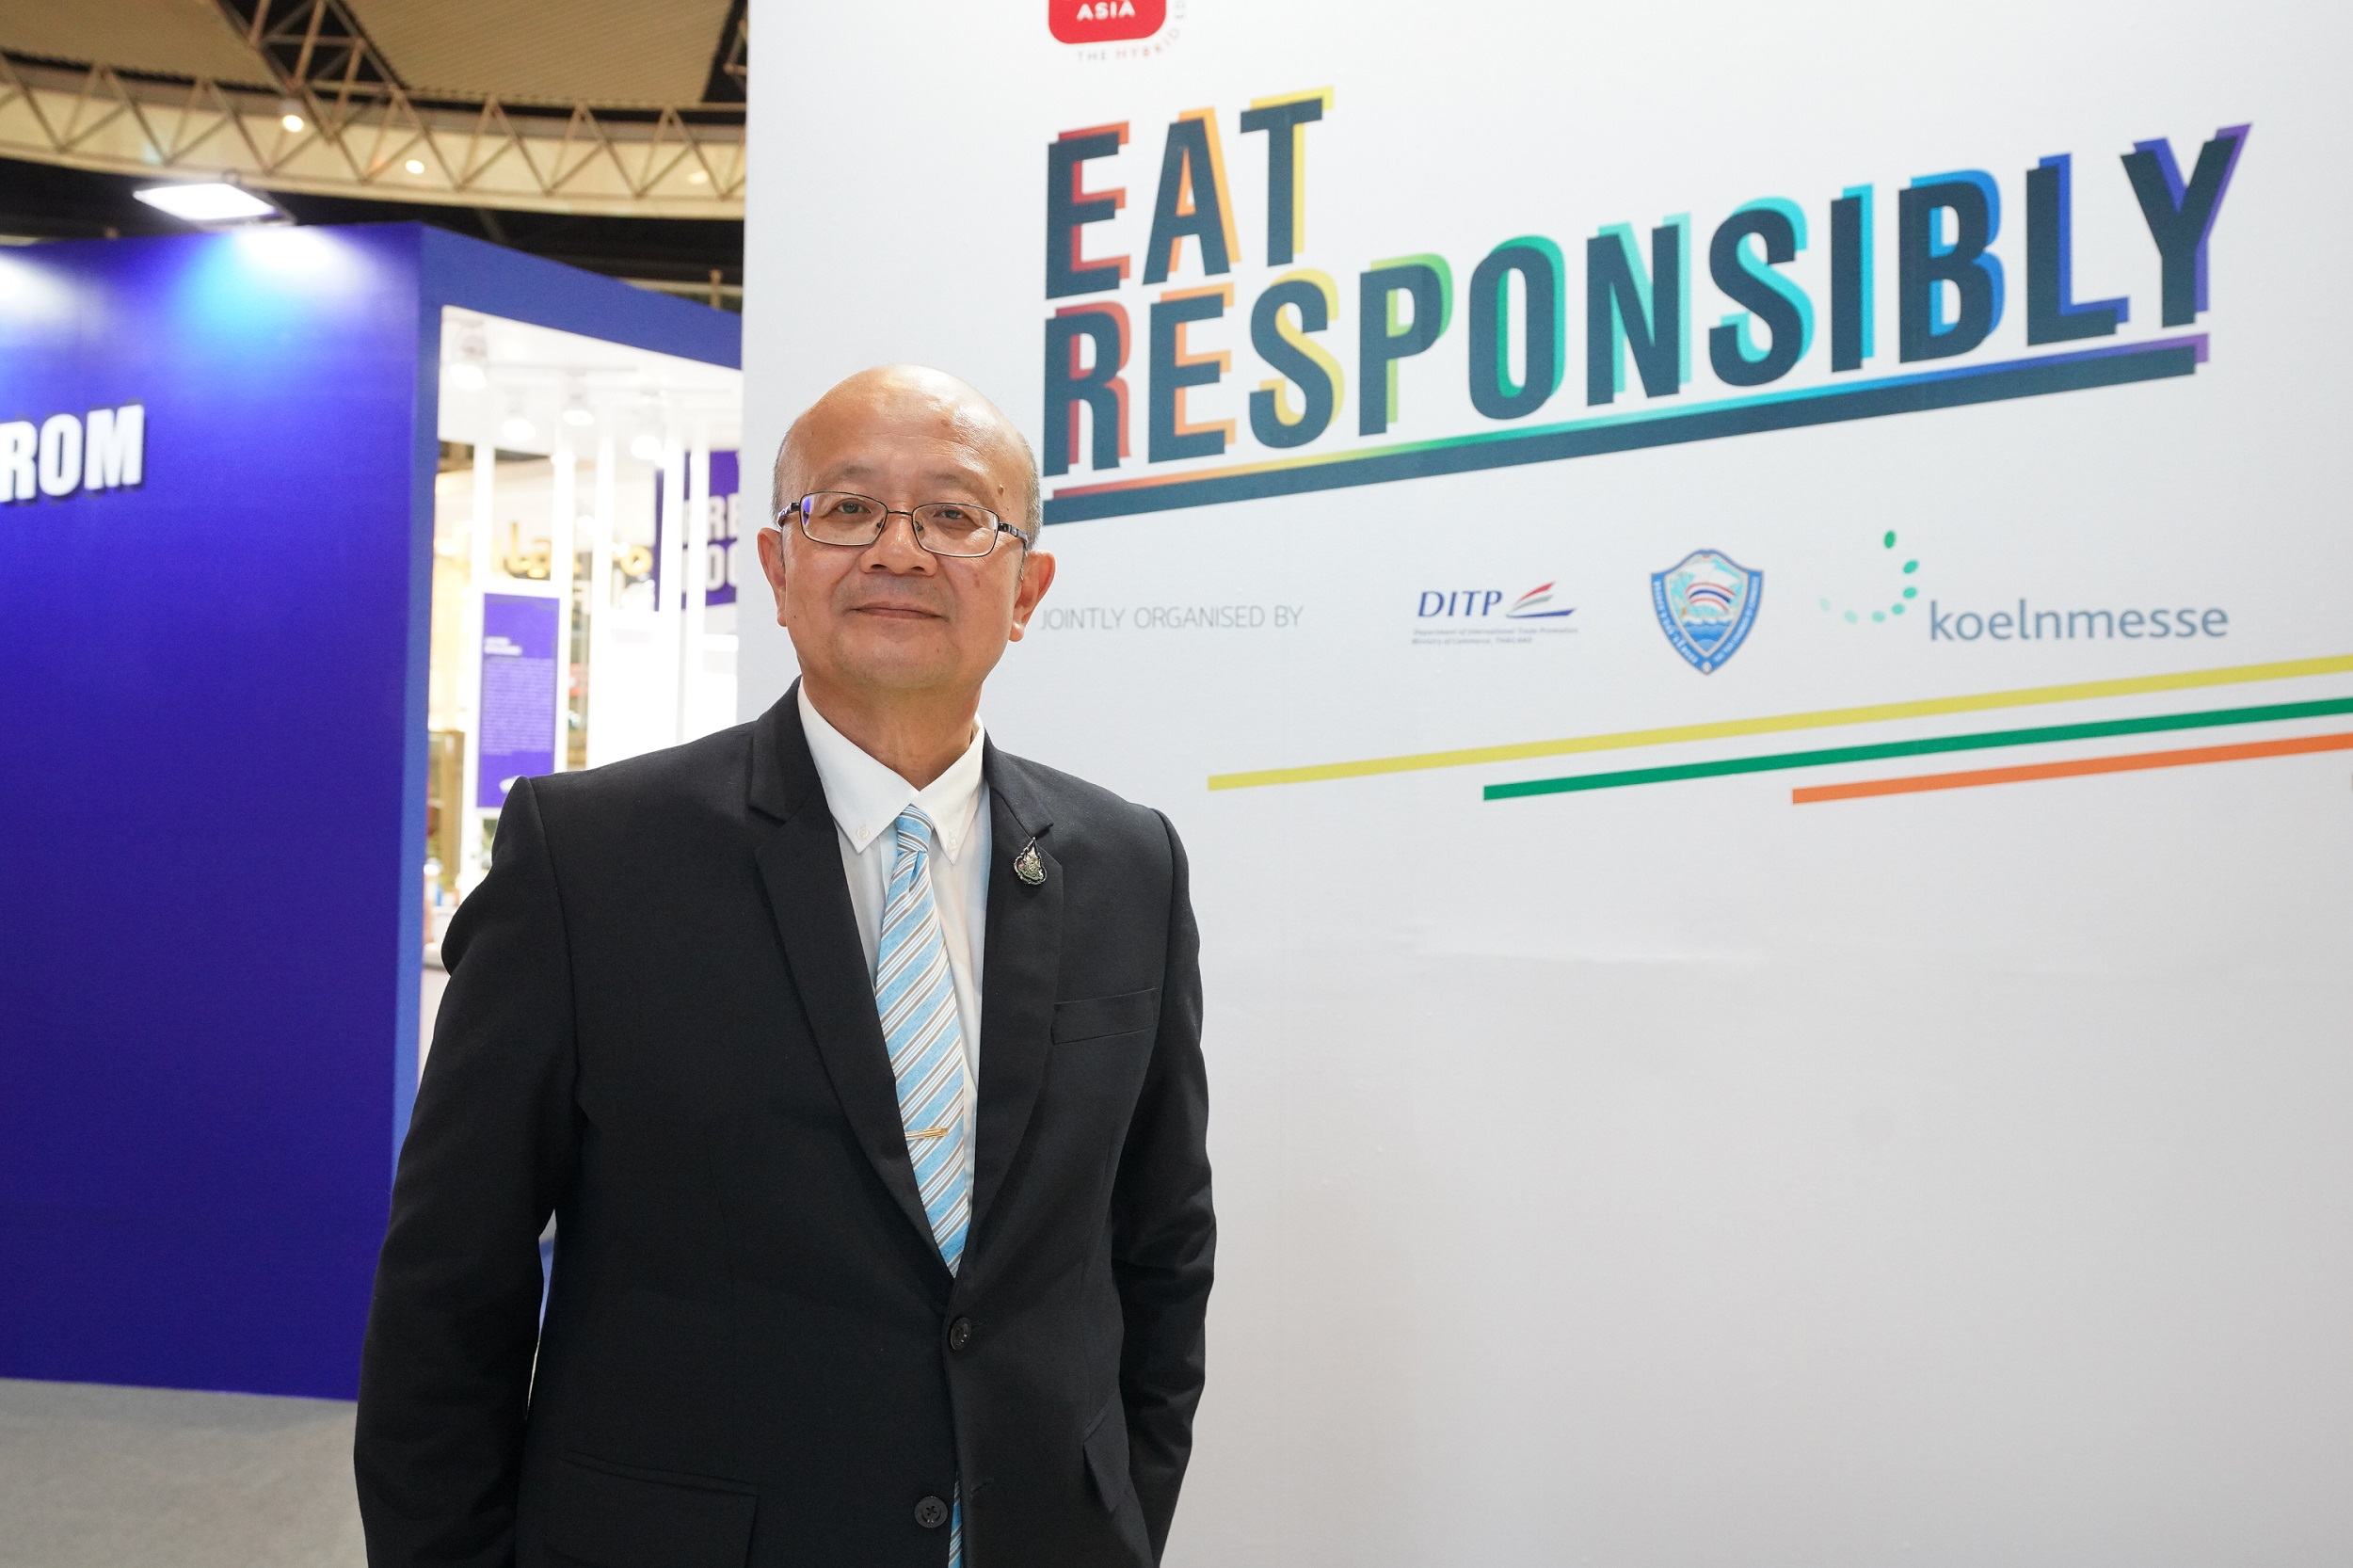 ชวนสัมผัส 8 โซนนิทรรศการ Eat Responsibly ในงาน THAIFEX ANUGA ASIA 2020 The Hybrid Edition ภายใต้คอนเซปต์